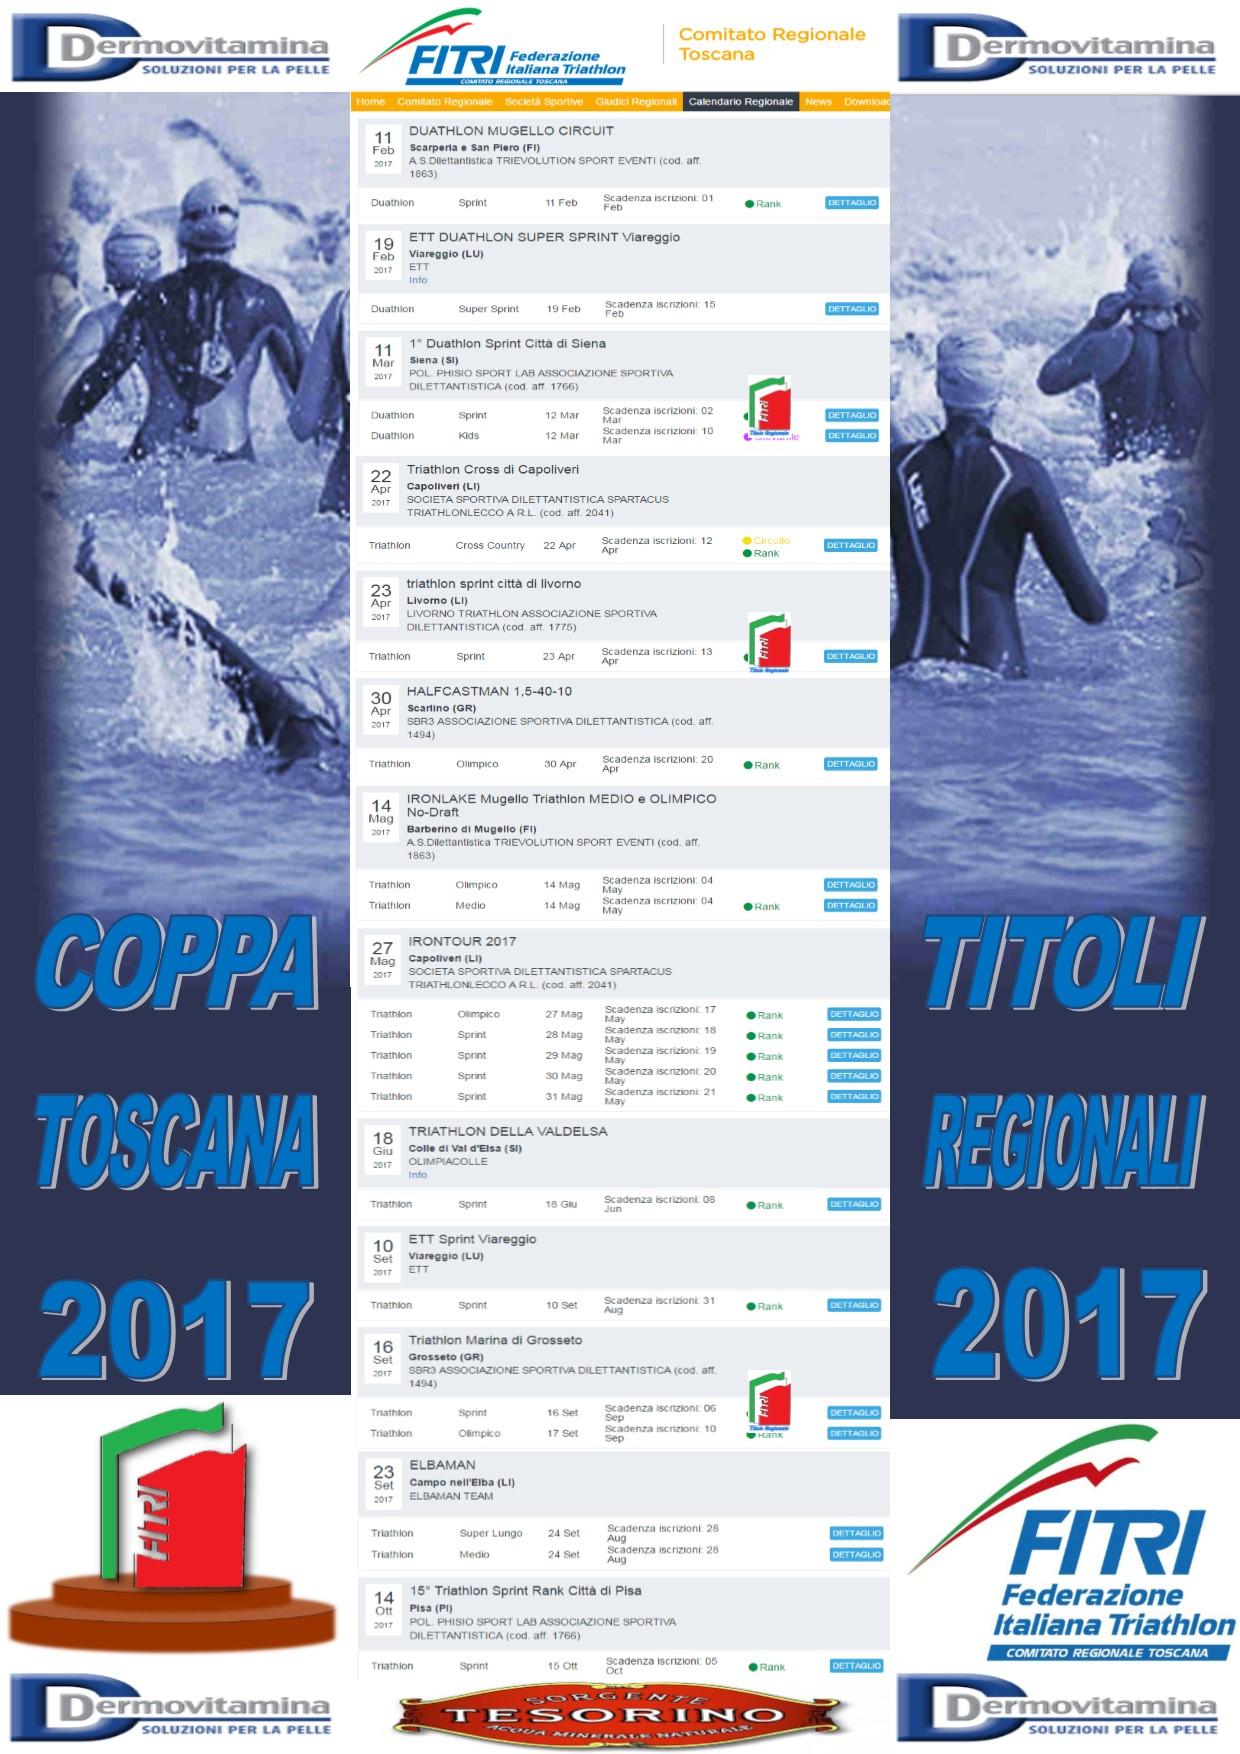 images/toscana/medium/calendario_2017_sponsor.jpg